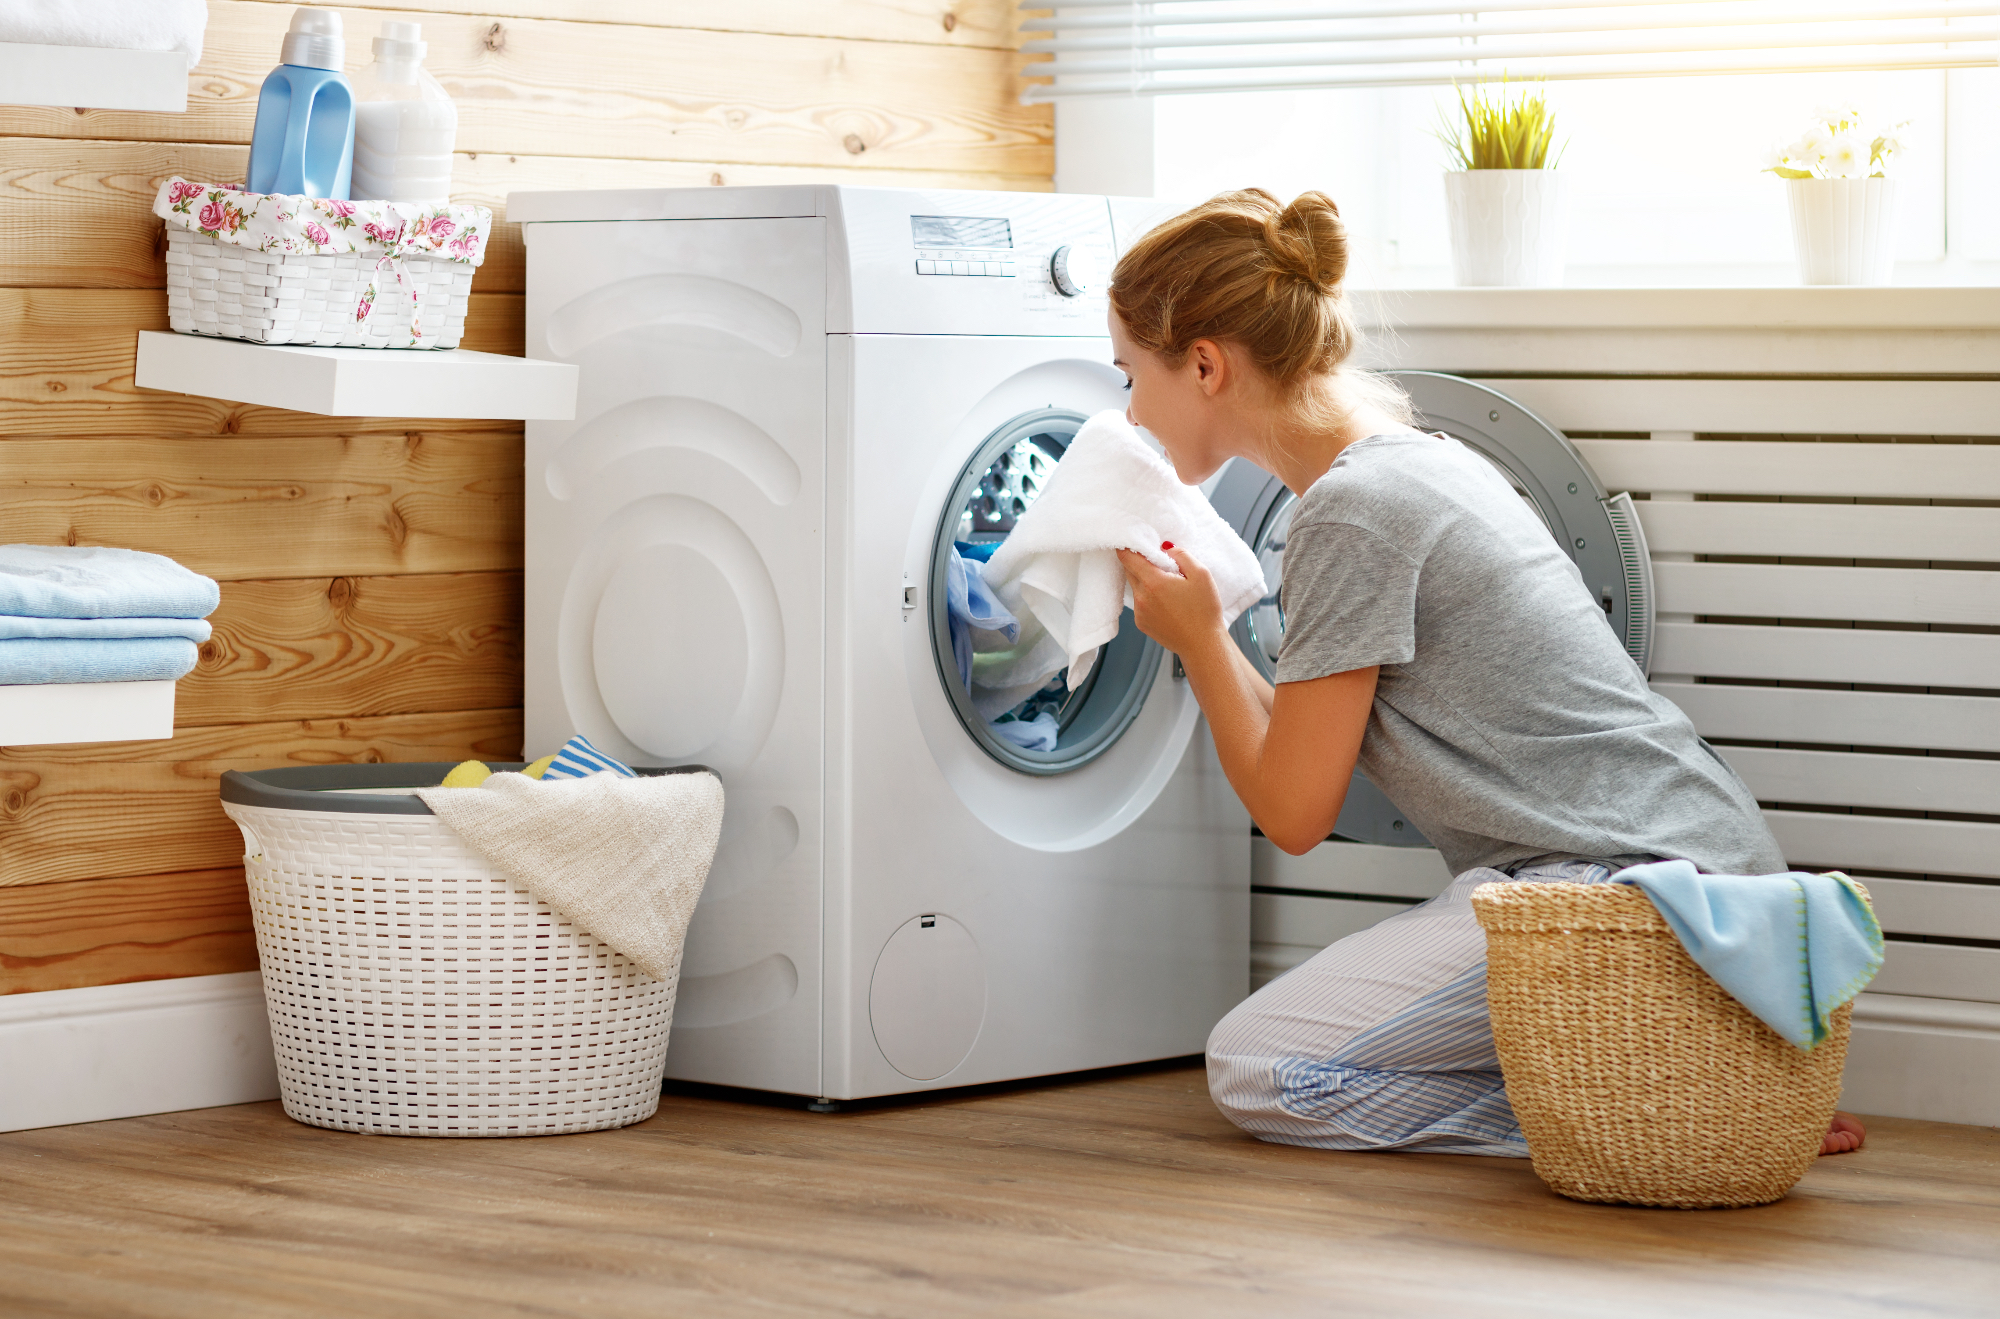 Pralni stroji so v vsakem gospodinjstvu res zelo pomembni